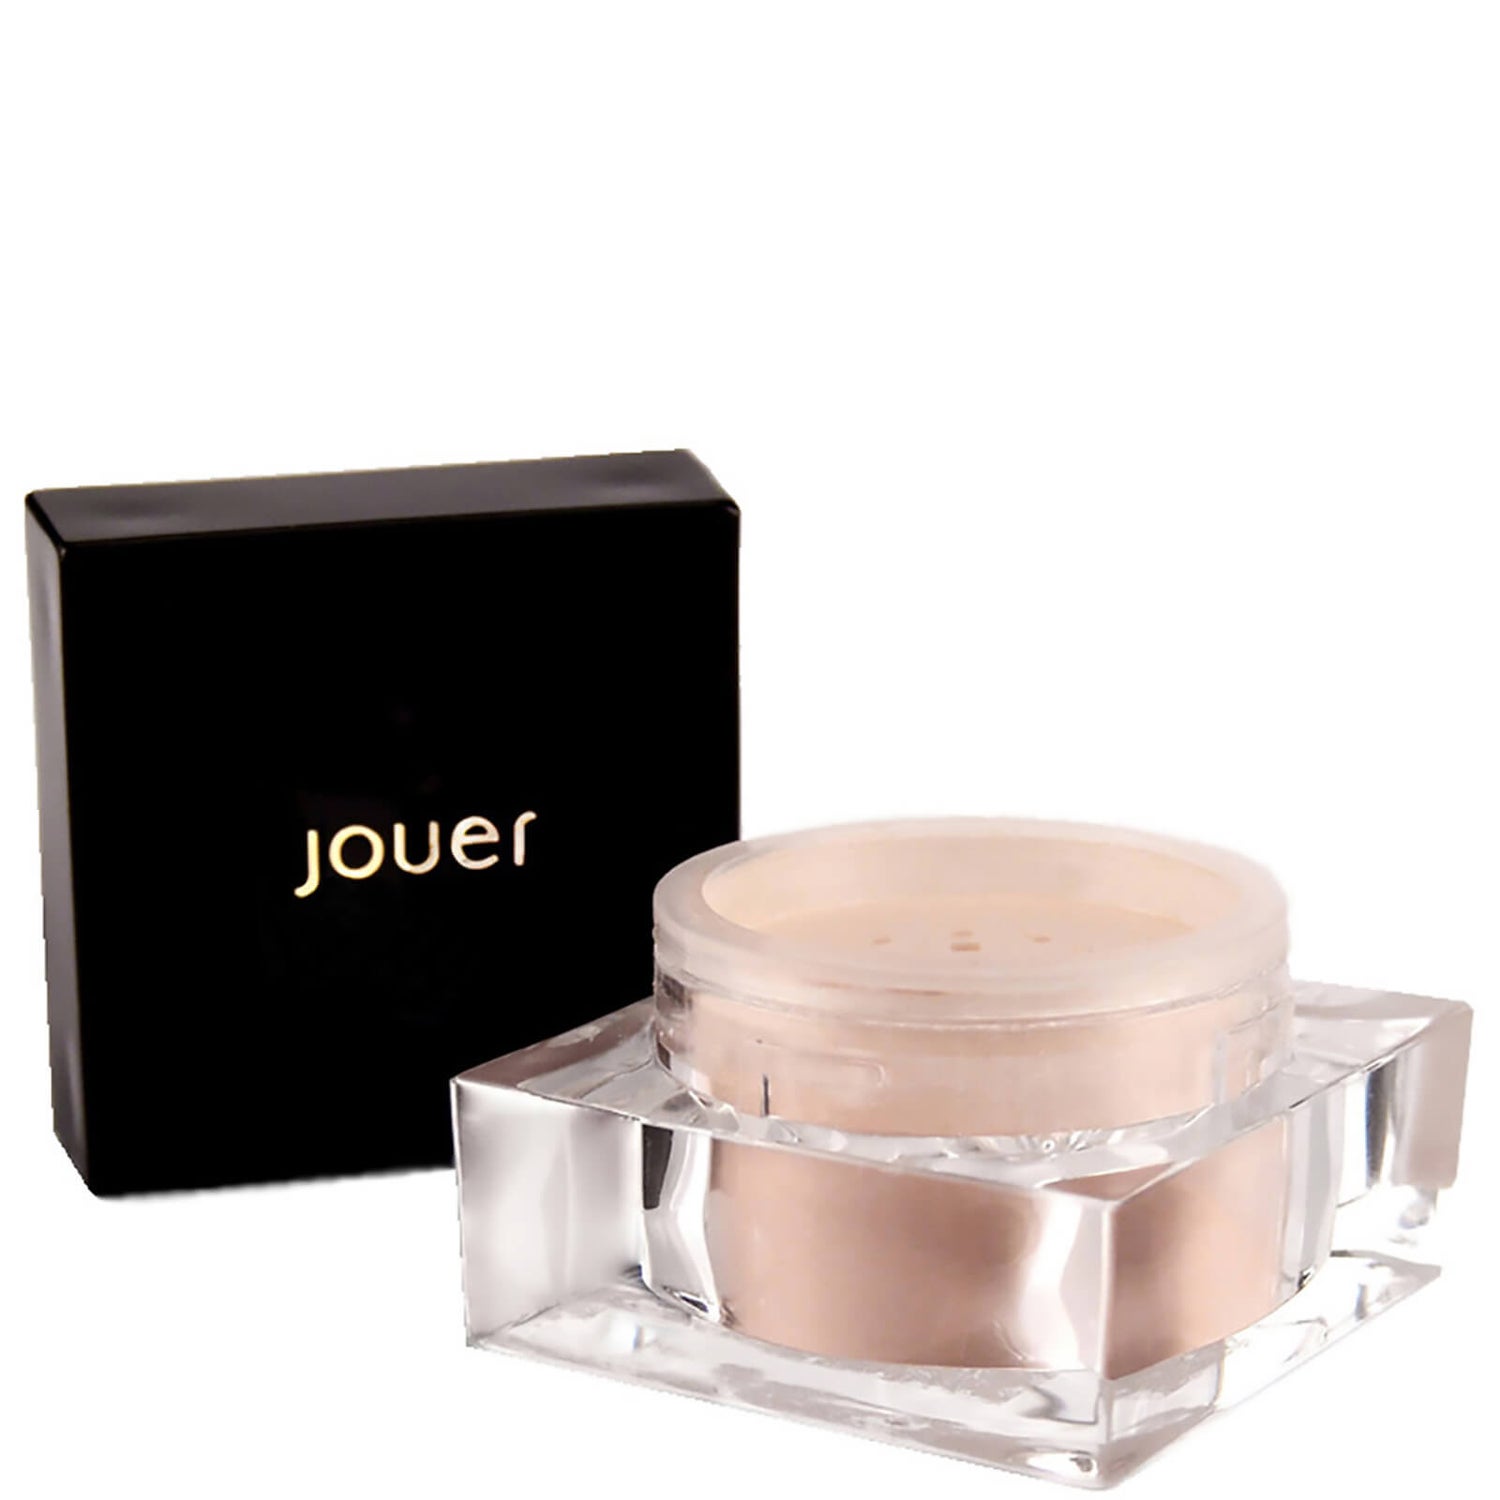 Jouer Cosmetics Glistening Brightening Powder